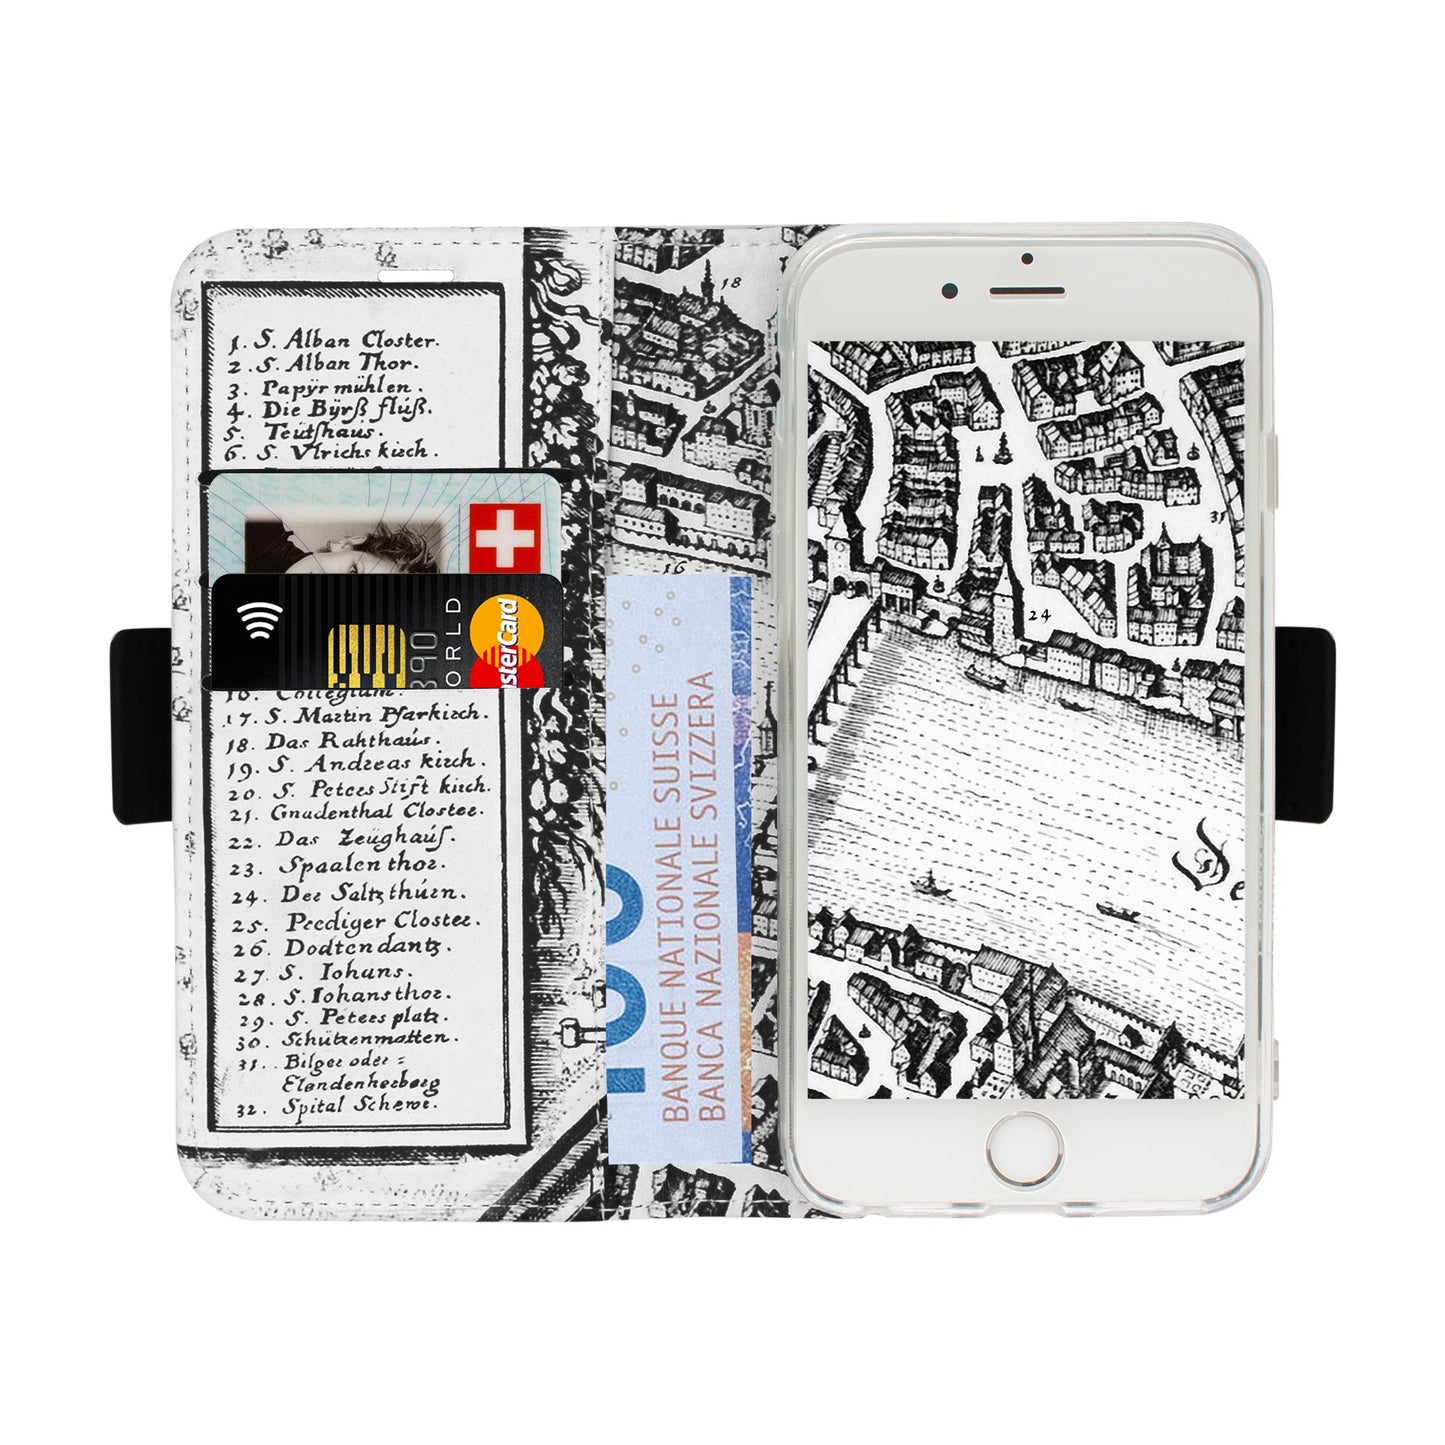 Basel Merian Victor Case für iPhone 5/5S/SE 1